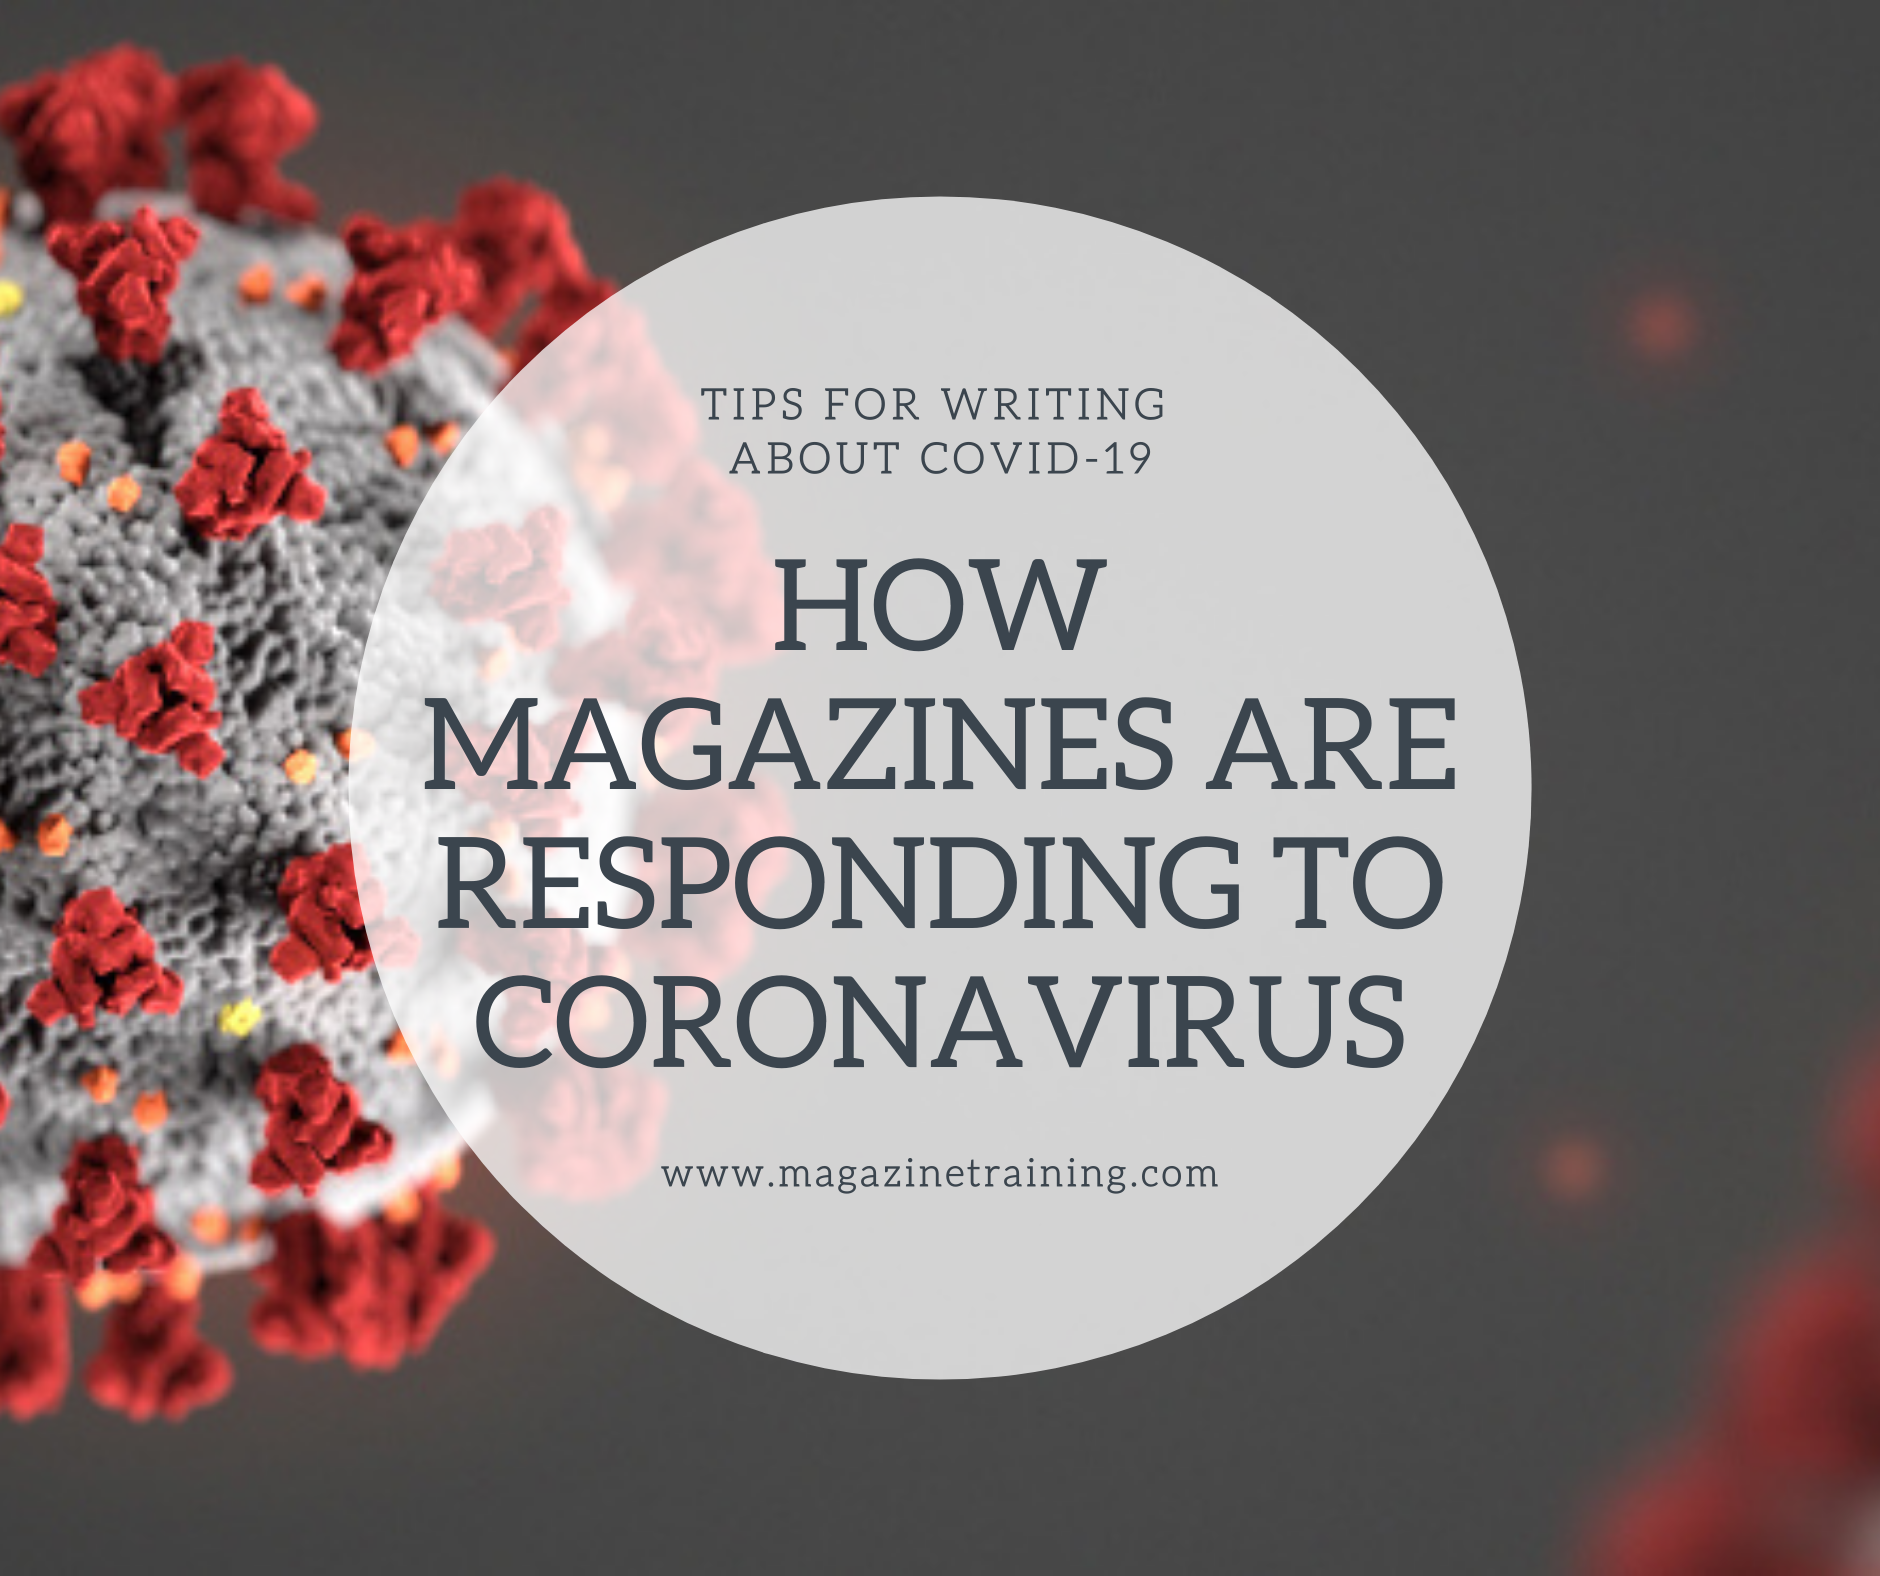 magazines are responding to coronavirus